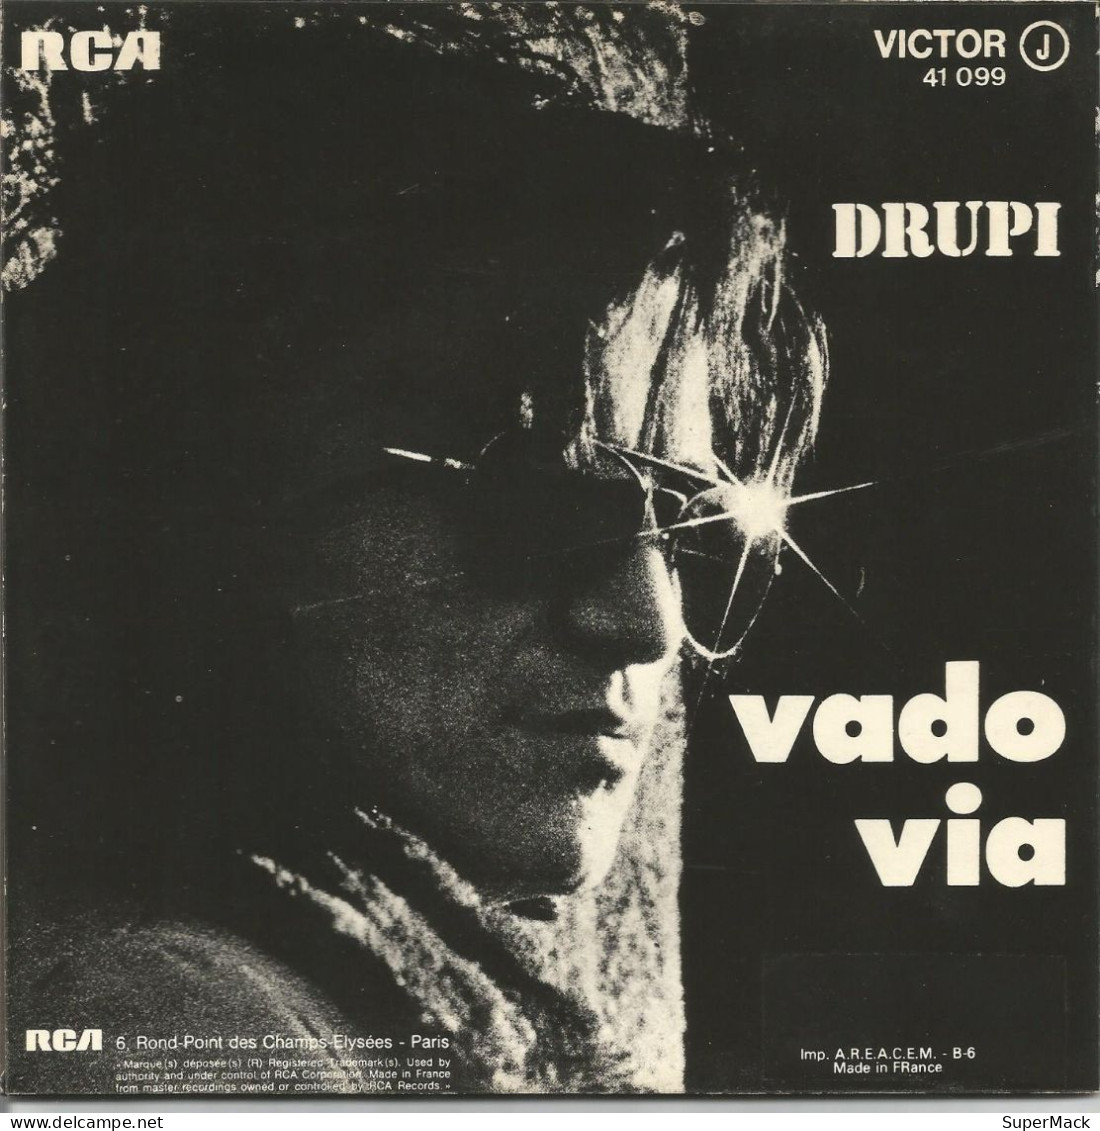 45T Drupi - Vado Via - RCA Victor 41.099 - France - 1973 - Collectors